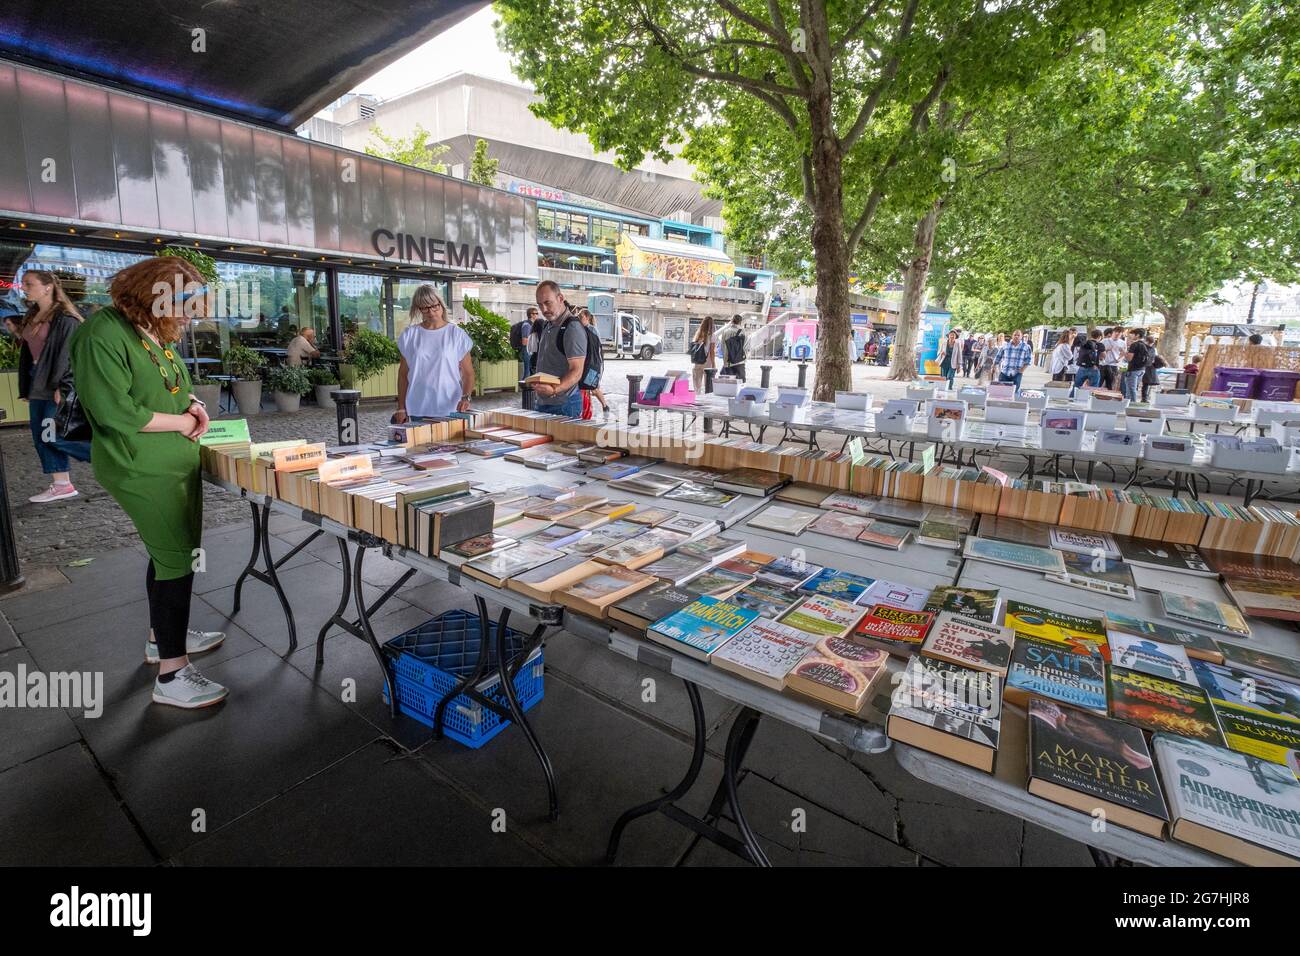 Persiguiendo libros en una estantería al aire libre bajo el puente Waterloo, junto al centro de South Bank en el paseo junto al río Támesis en Londres, cerca de Waterloo Foto de stock